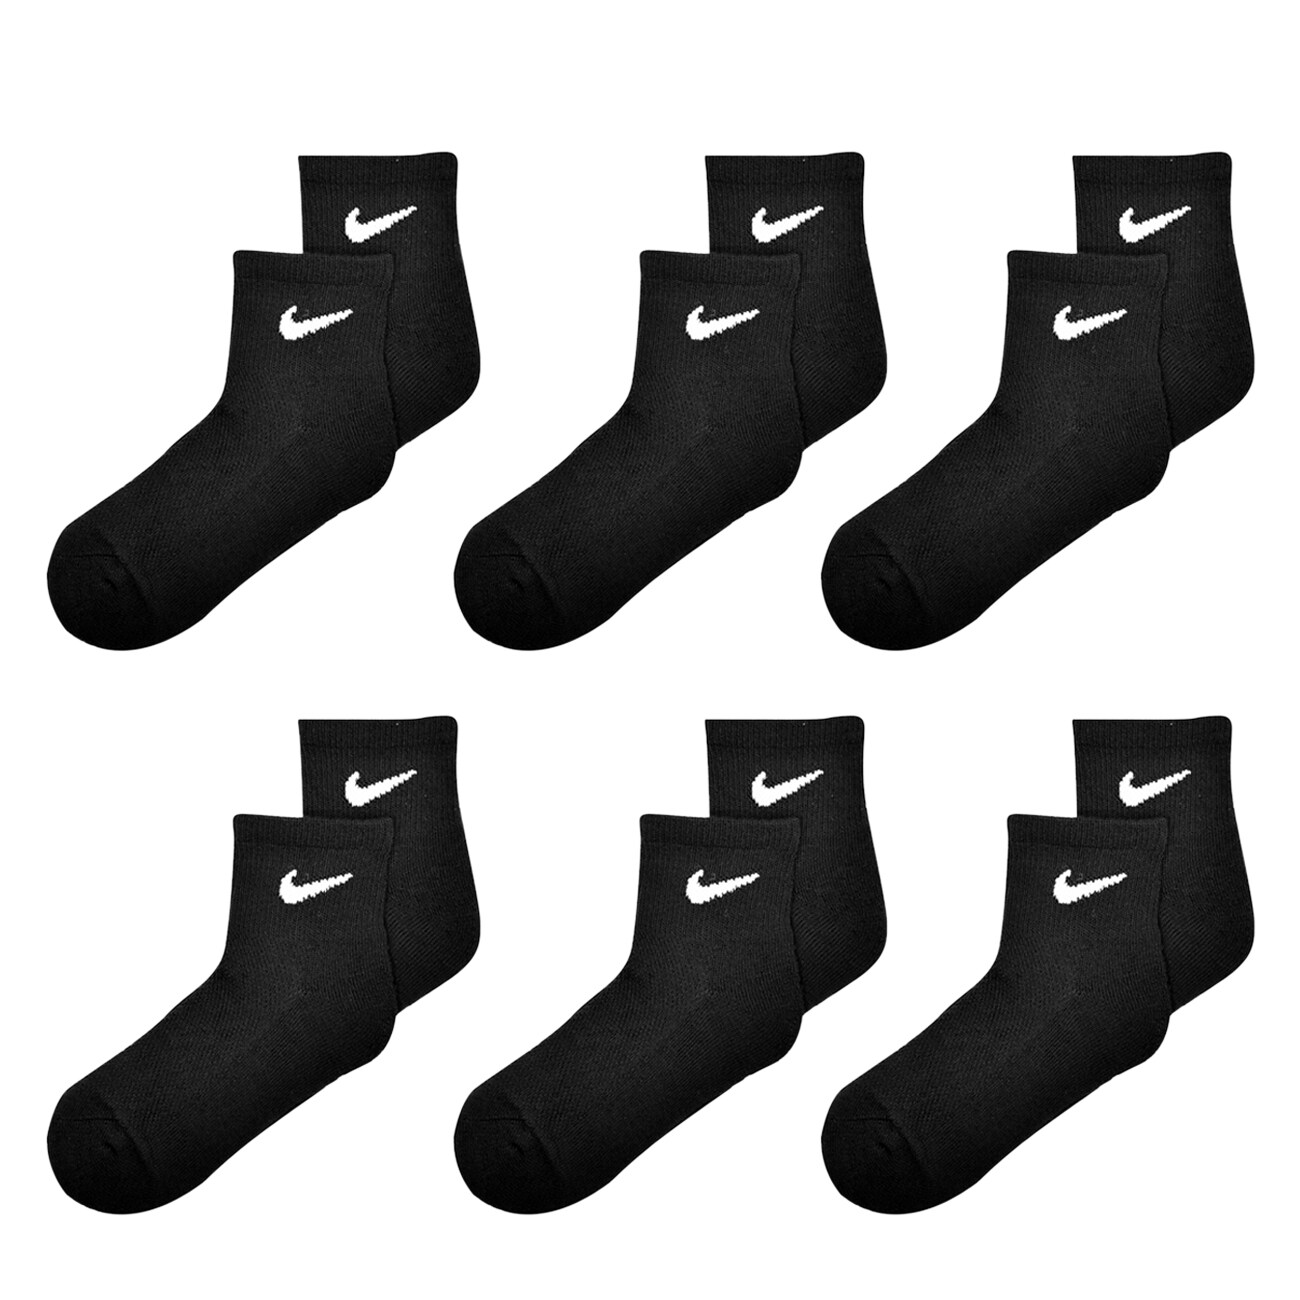 Nike Kids' 6-Pack Ankle Socks | The Shoe Company